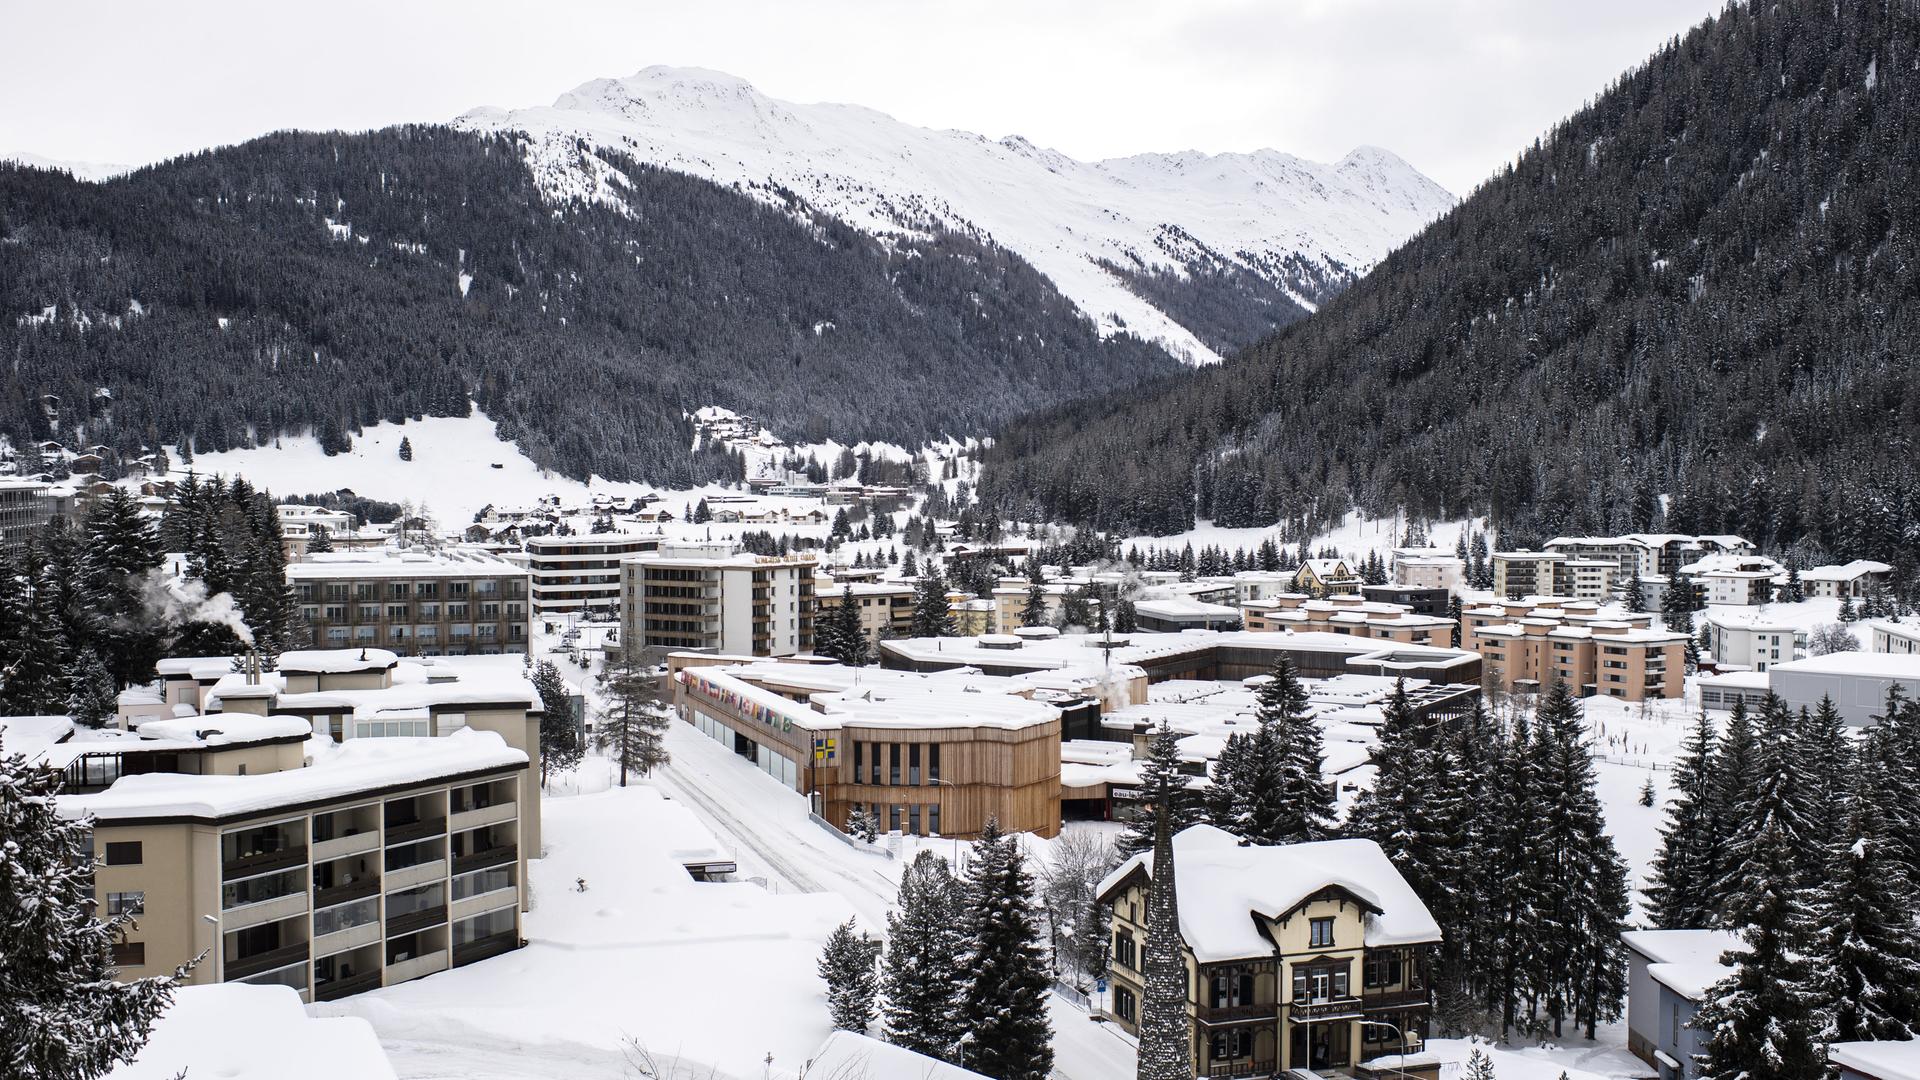 Blick auf die Stadt Davos im Winter. Die Häuser und Berge sind mit Schnee bedeckt.